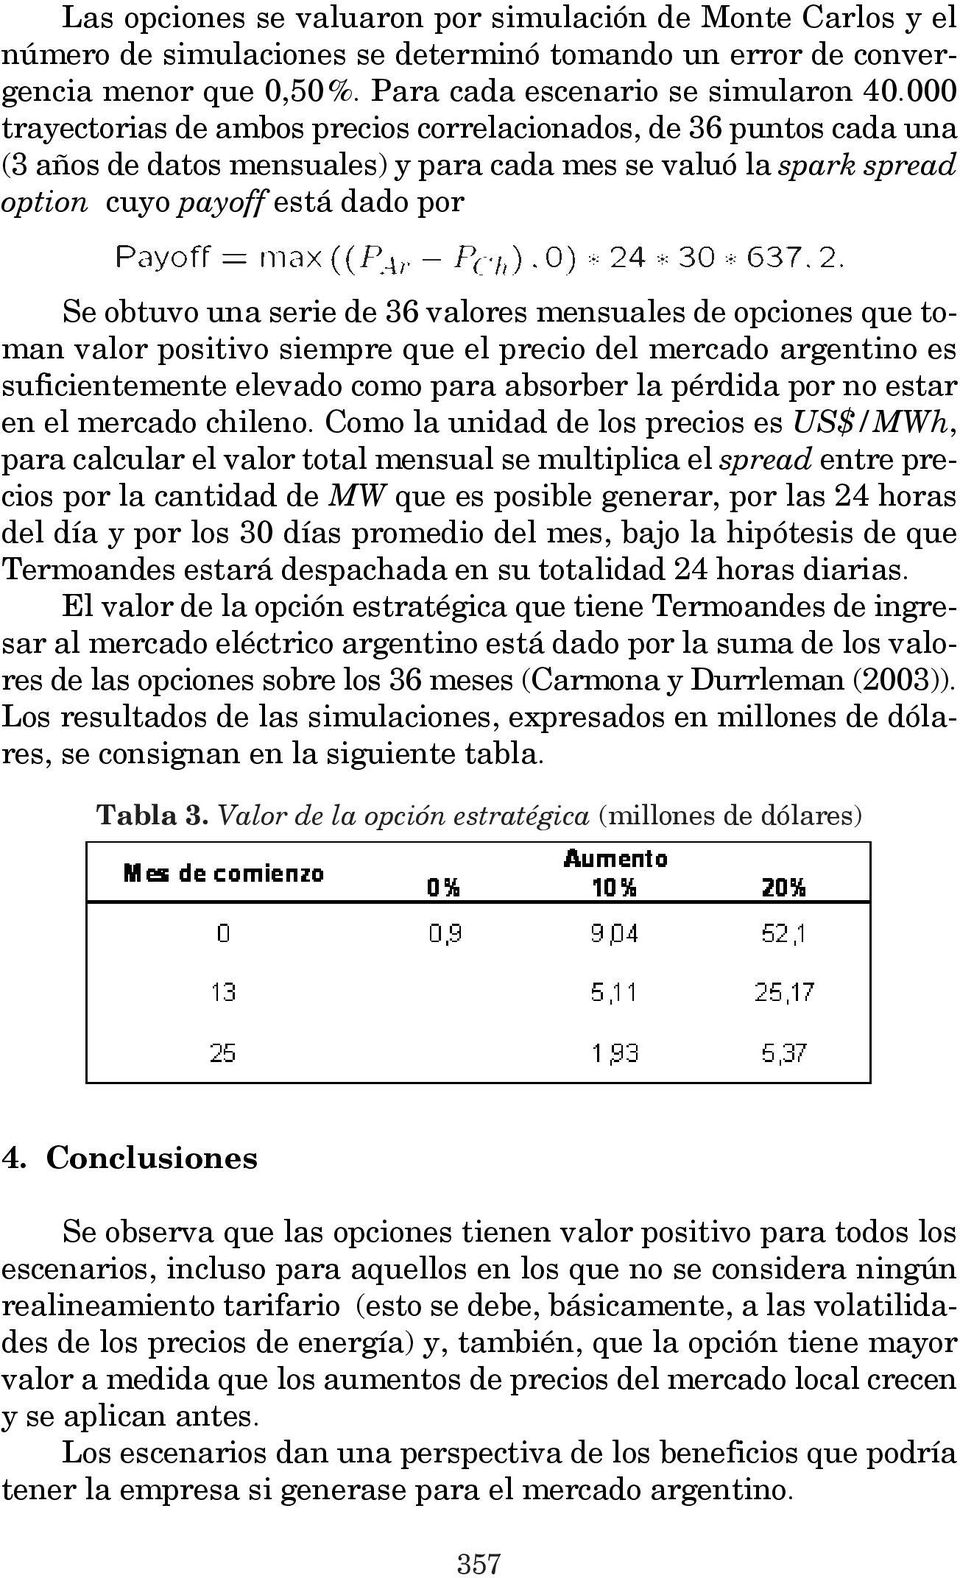 36 valores mensuales de opciones que toman valor positivo siempre que el precio del mercado argentino es suficientemente elevado como para absorber la pérdida por no estar en el mercado chileno.